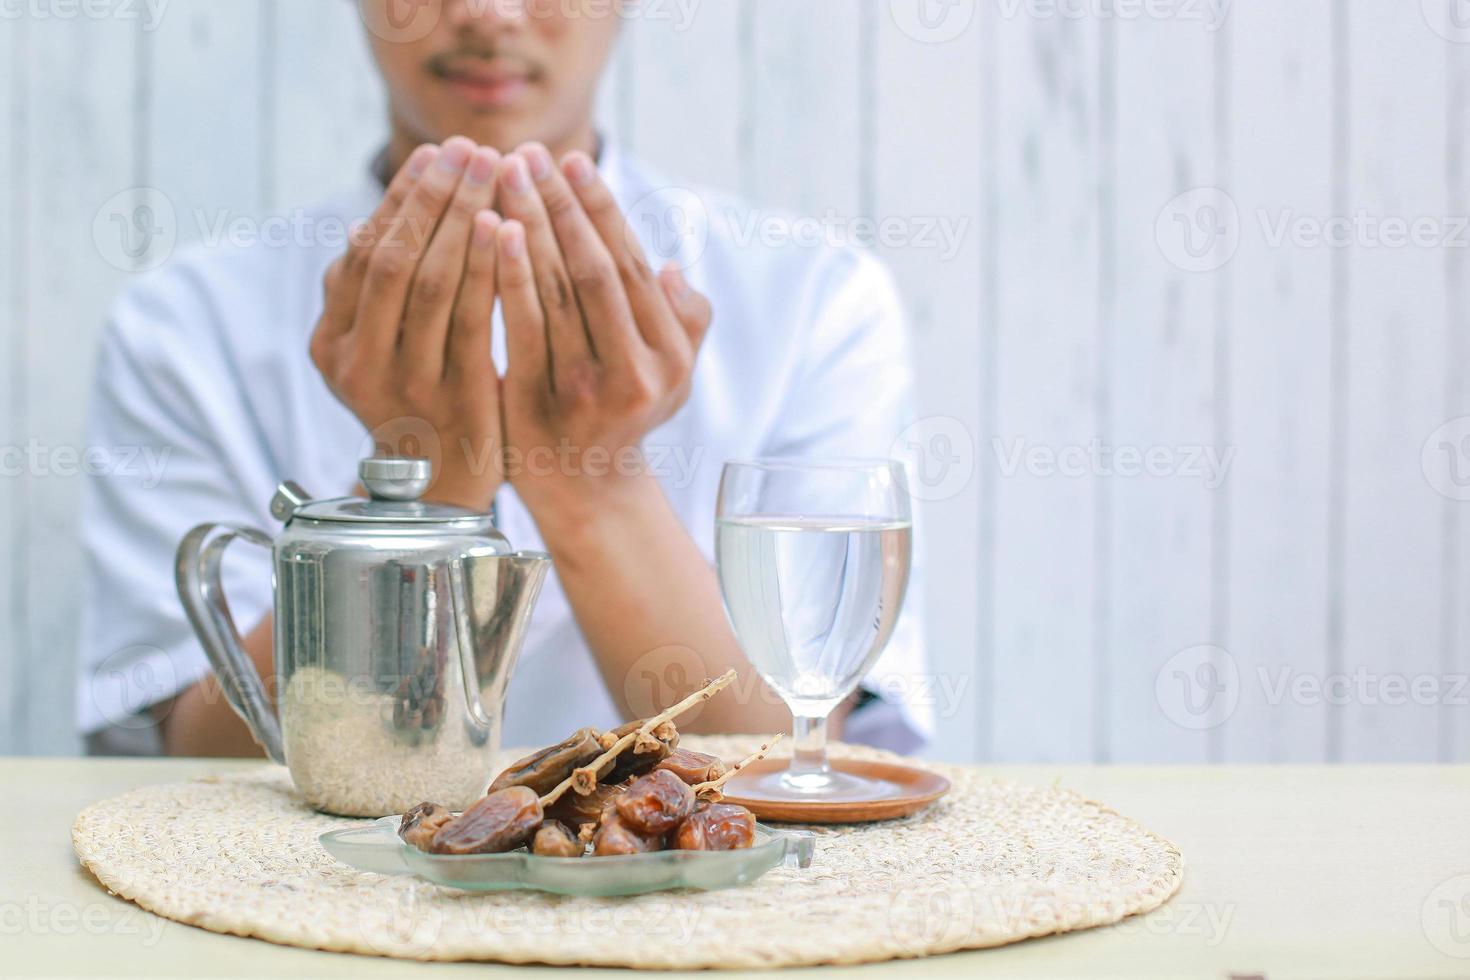 Iftar-Gericht mit muslimischer Mannhand, die zu Allah betet. datteln obst mit glas mineralwasser und teekanne auf dem tisch. traditionelles ramadan, iftar-mahlzeit. ramadan kareem fastenmonatskonzept. foto